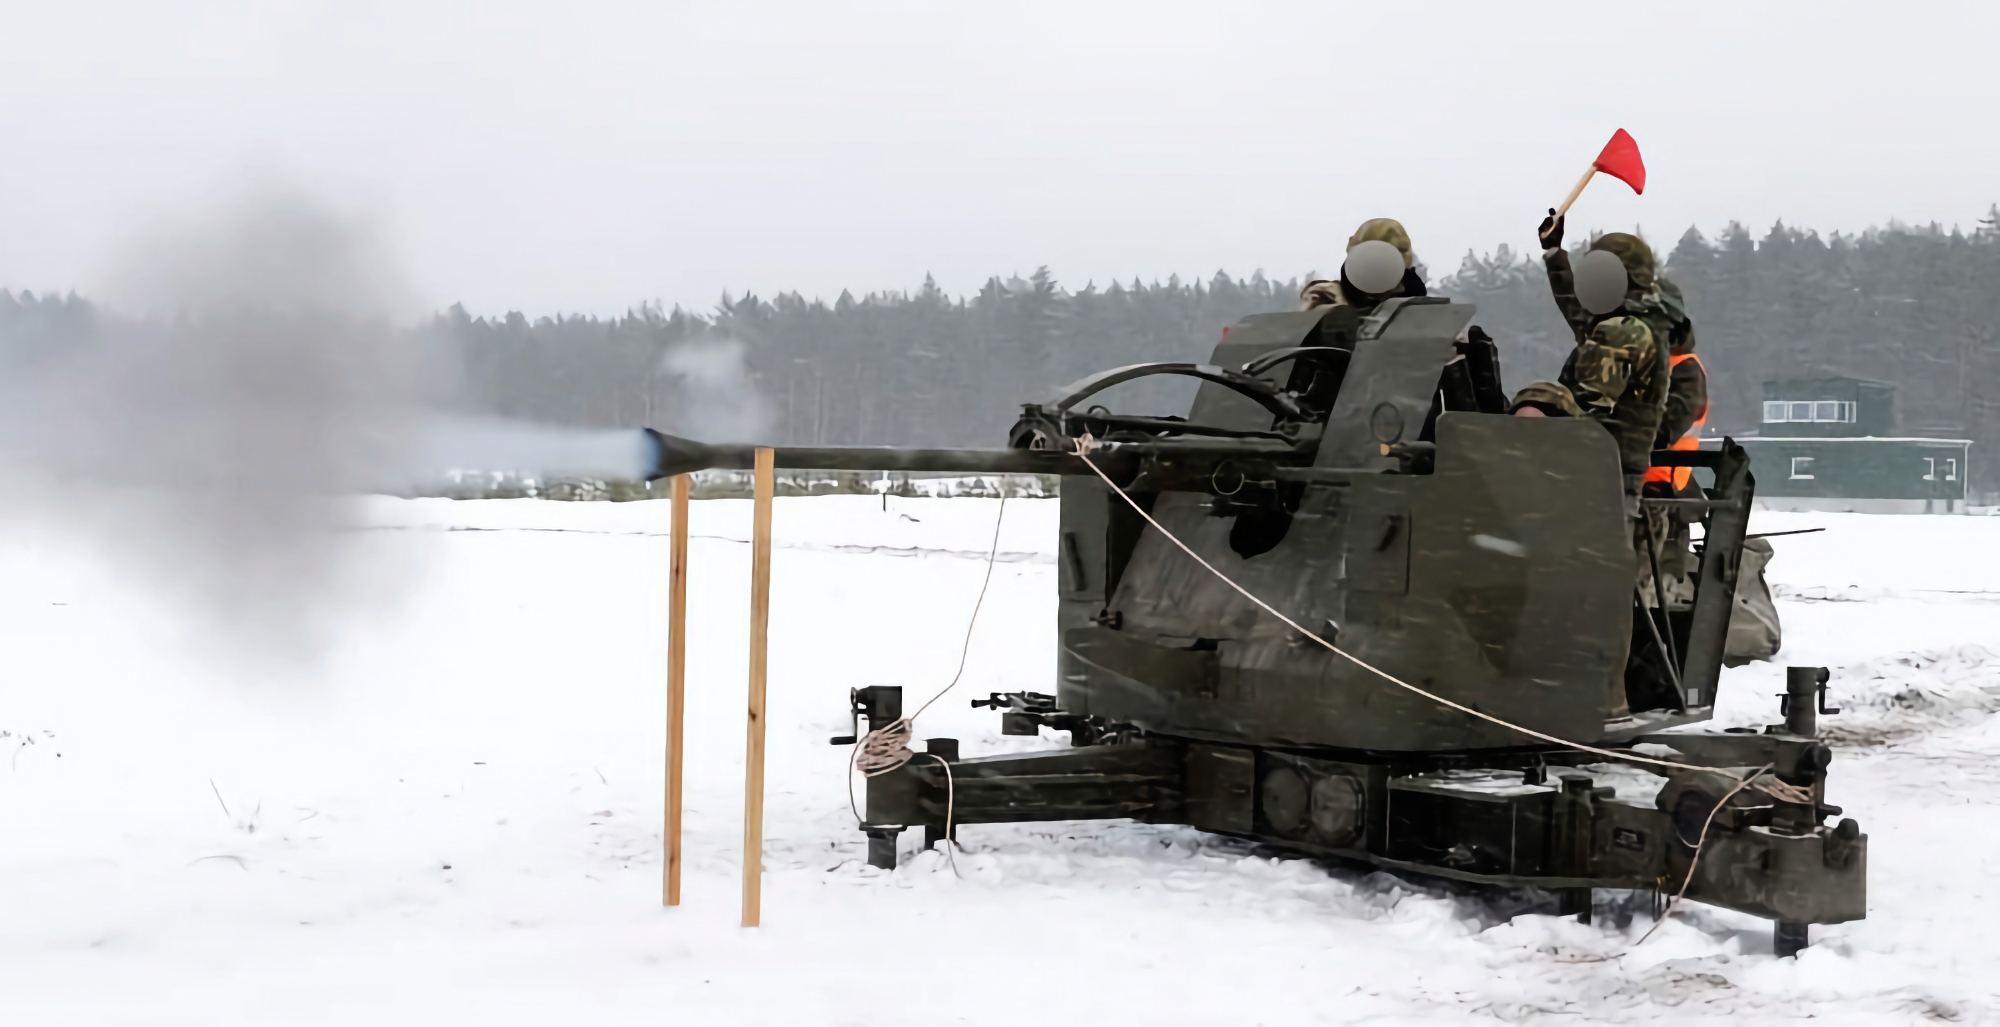 Die Ukraine erhält eine Ladung schwedischer L-70-Flugabwehrkanonen, die Luftziele in einer Entfernung von bis zu 12,5 km zerstören können